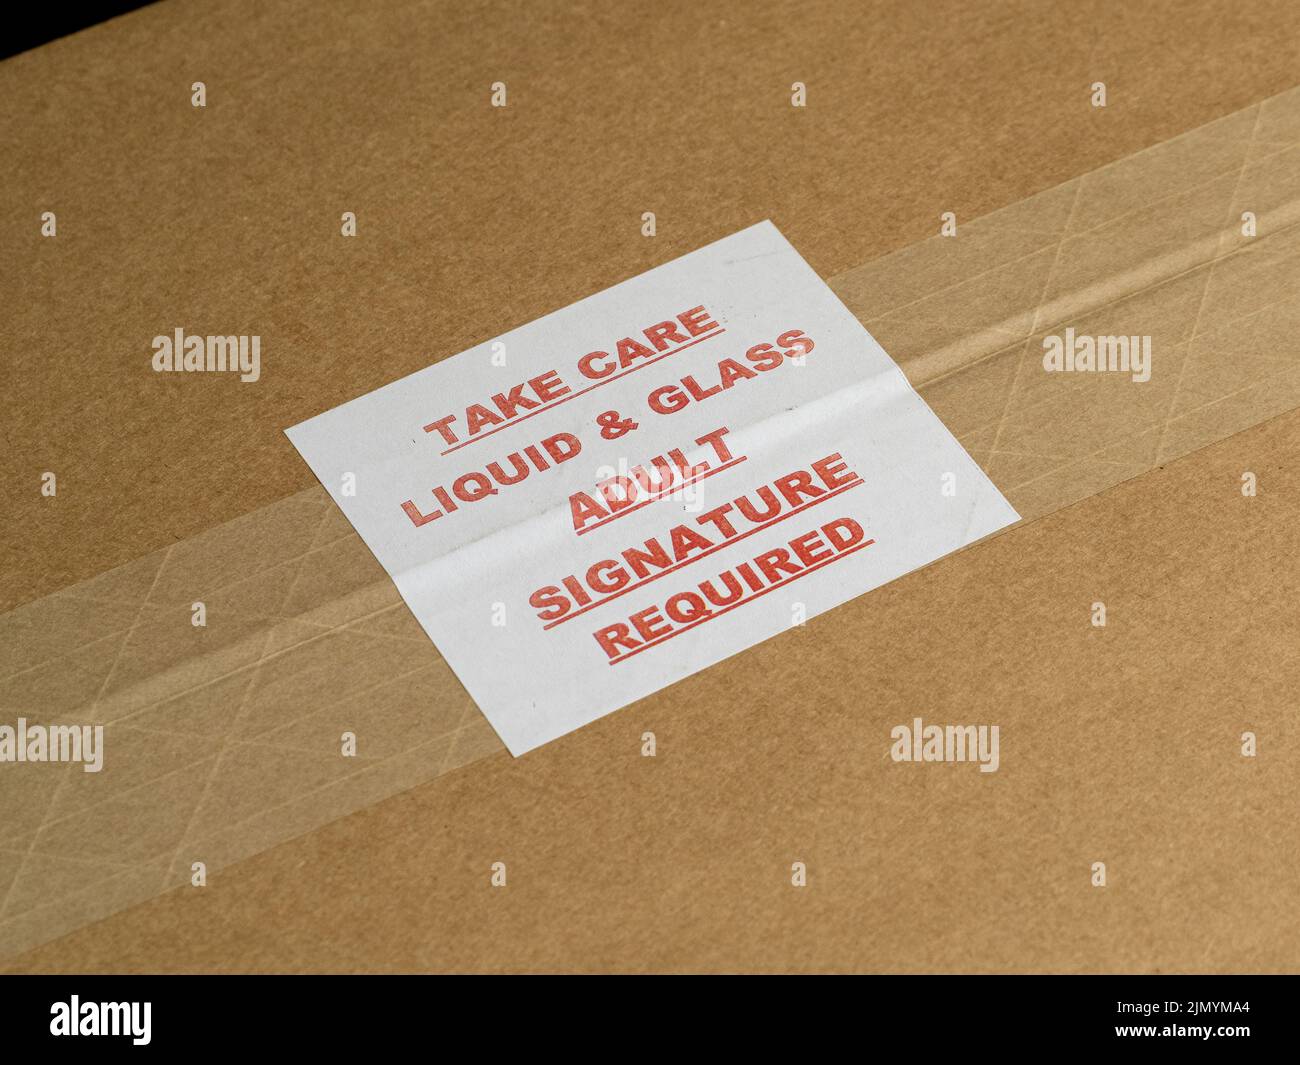 Cuídese Líquido y Vidrio Firma del adulto requerida: Etiqueta en una caja de cartón marrón sellada. Foto de stock